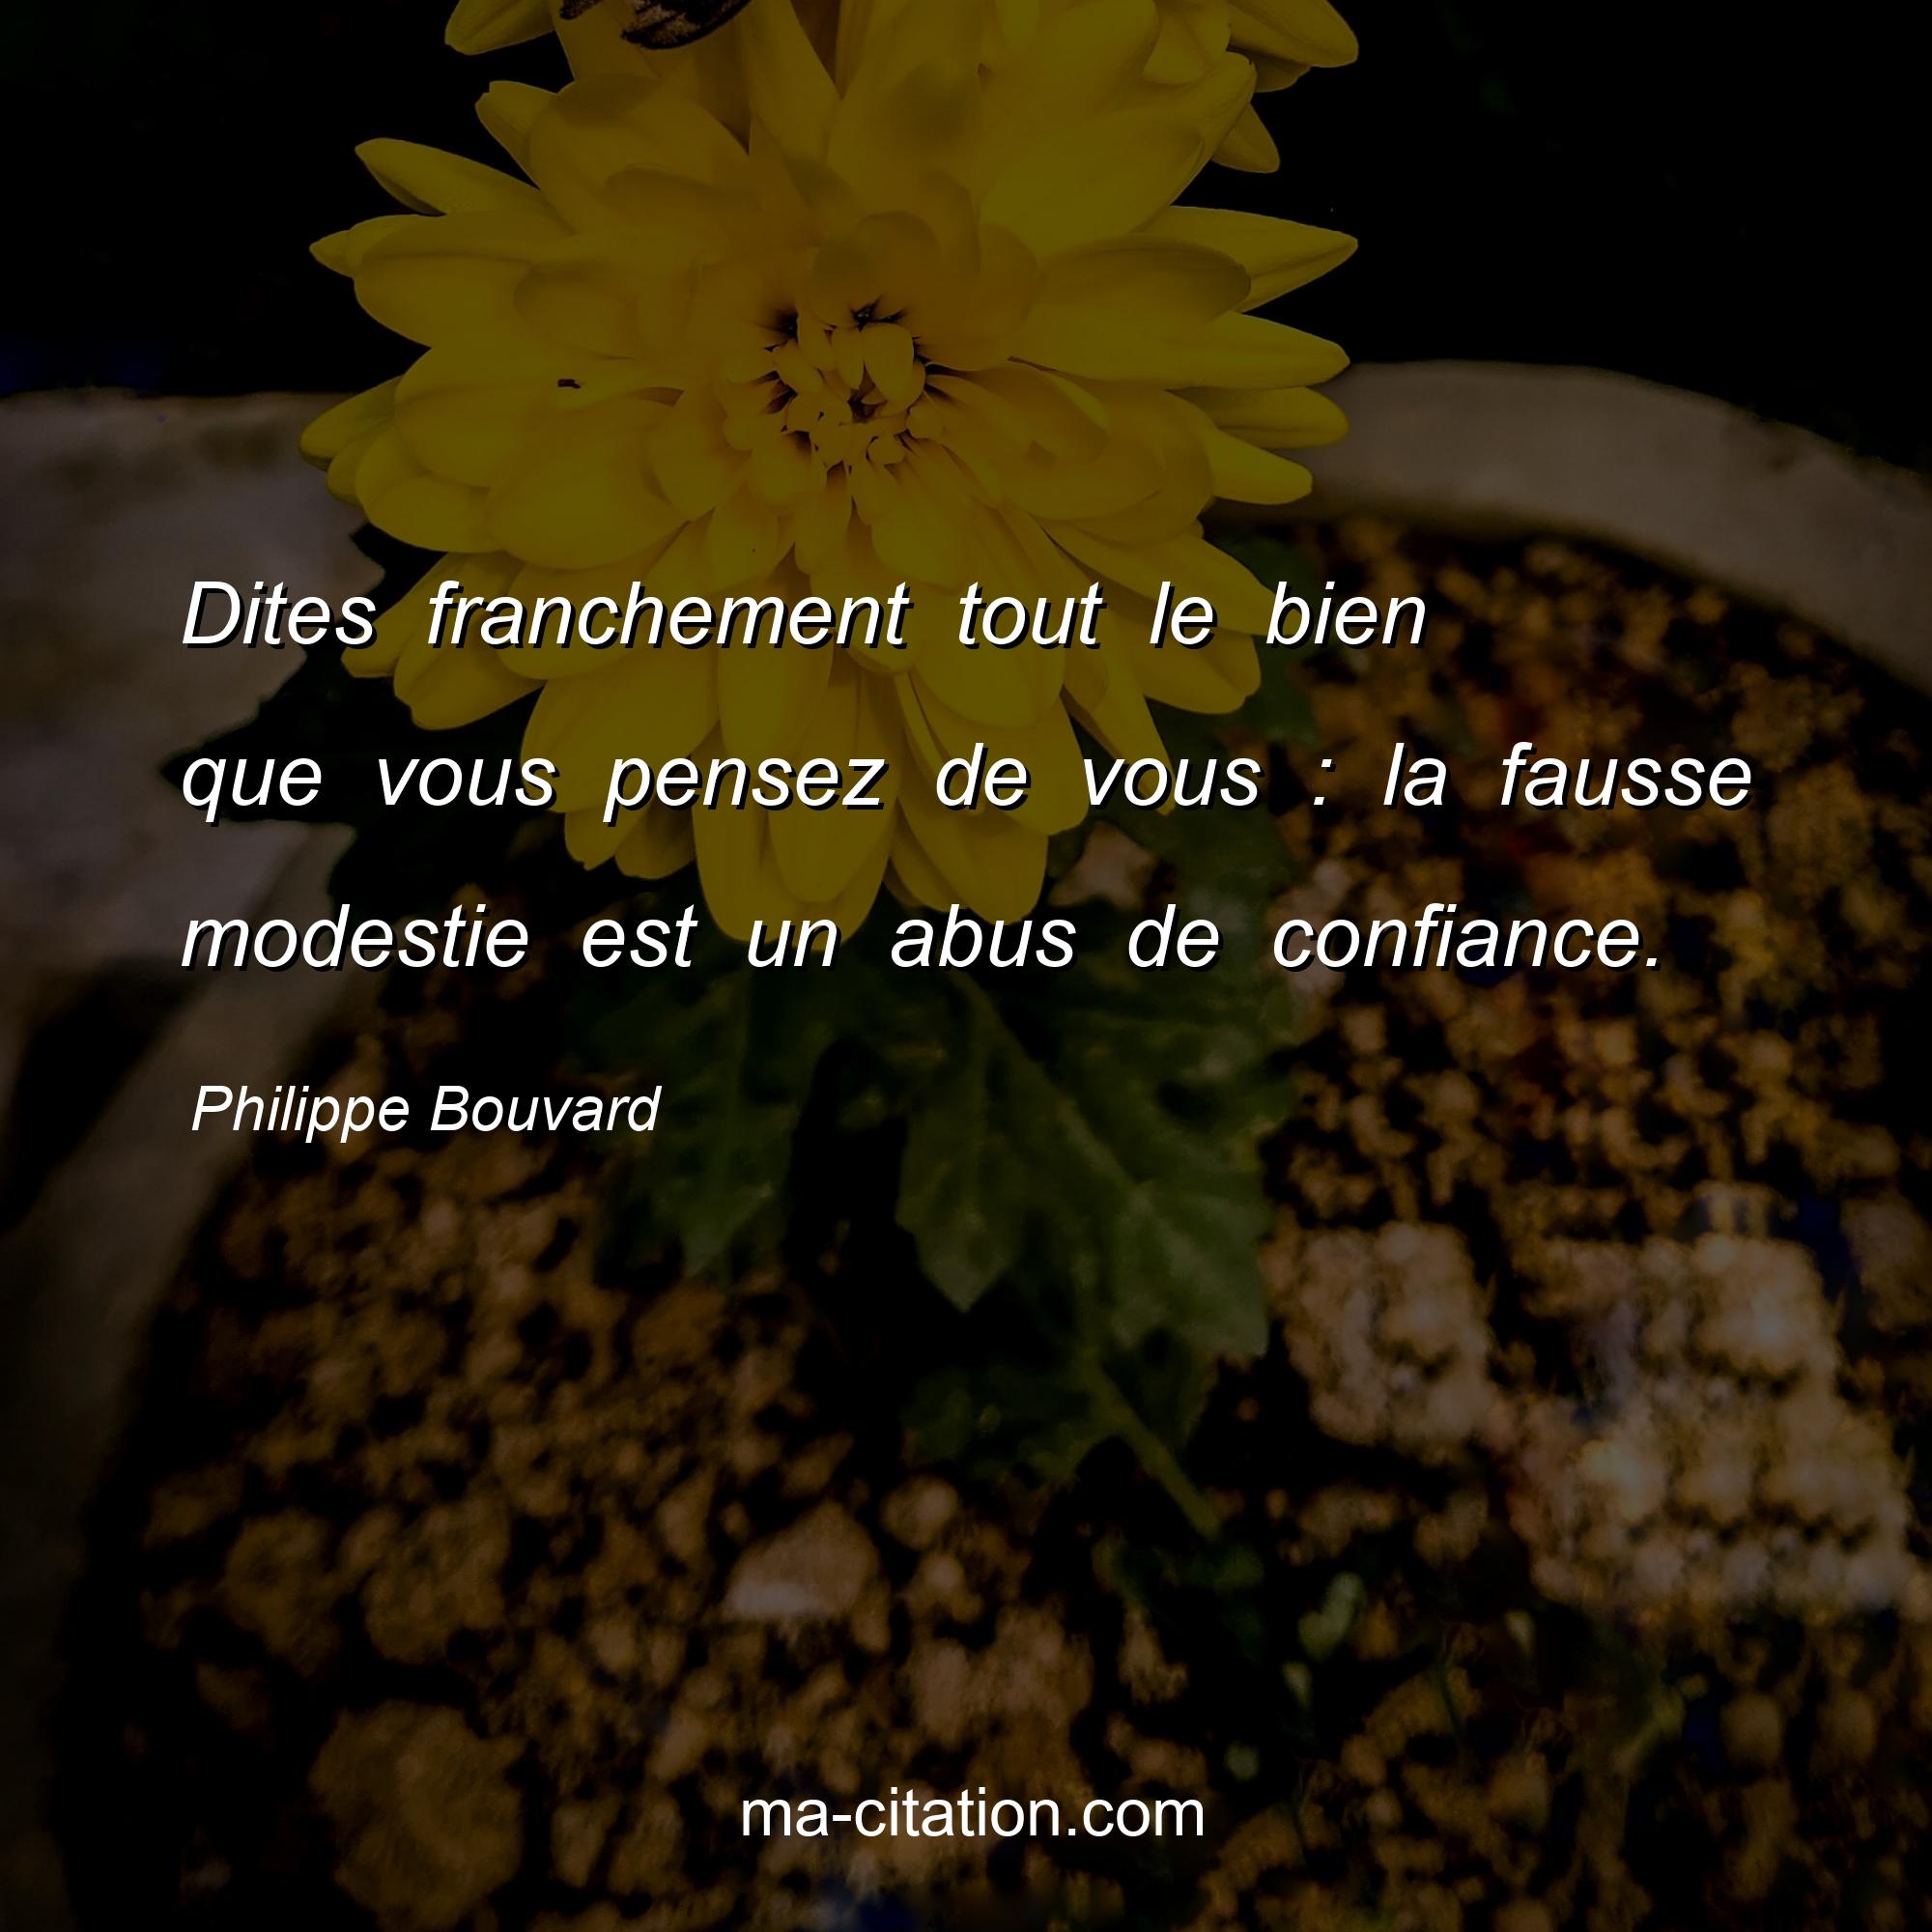 Philippe Bouvard : Dites franchement tout le bien que vous pensez de vous : la fausse modestie est un abus de confiance.